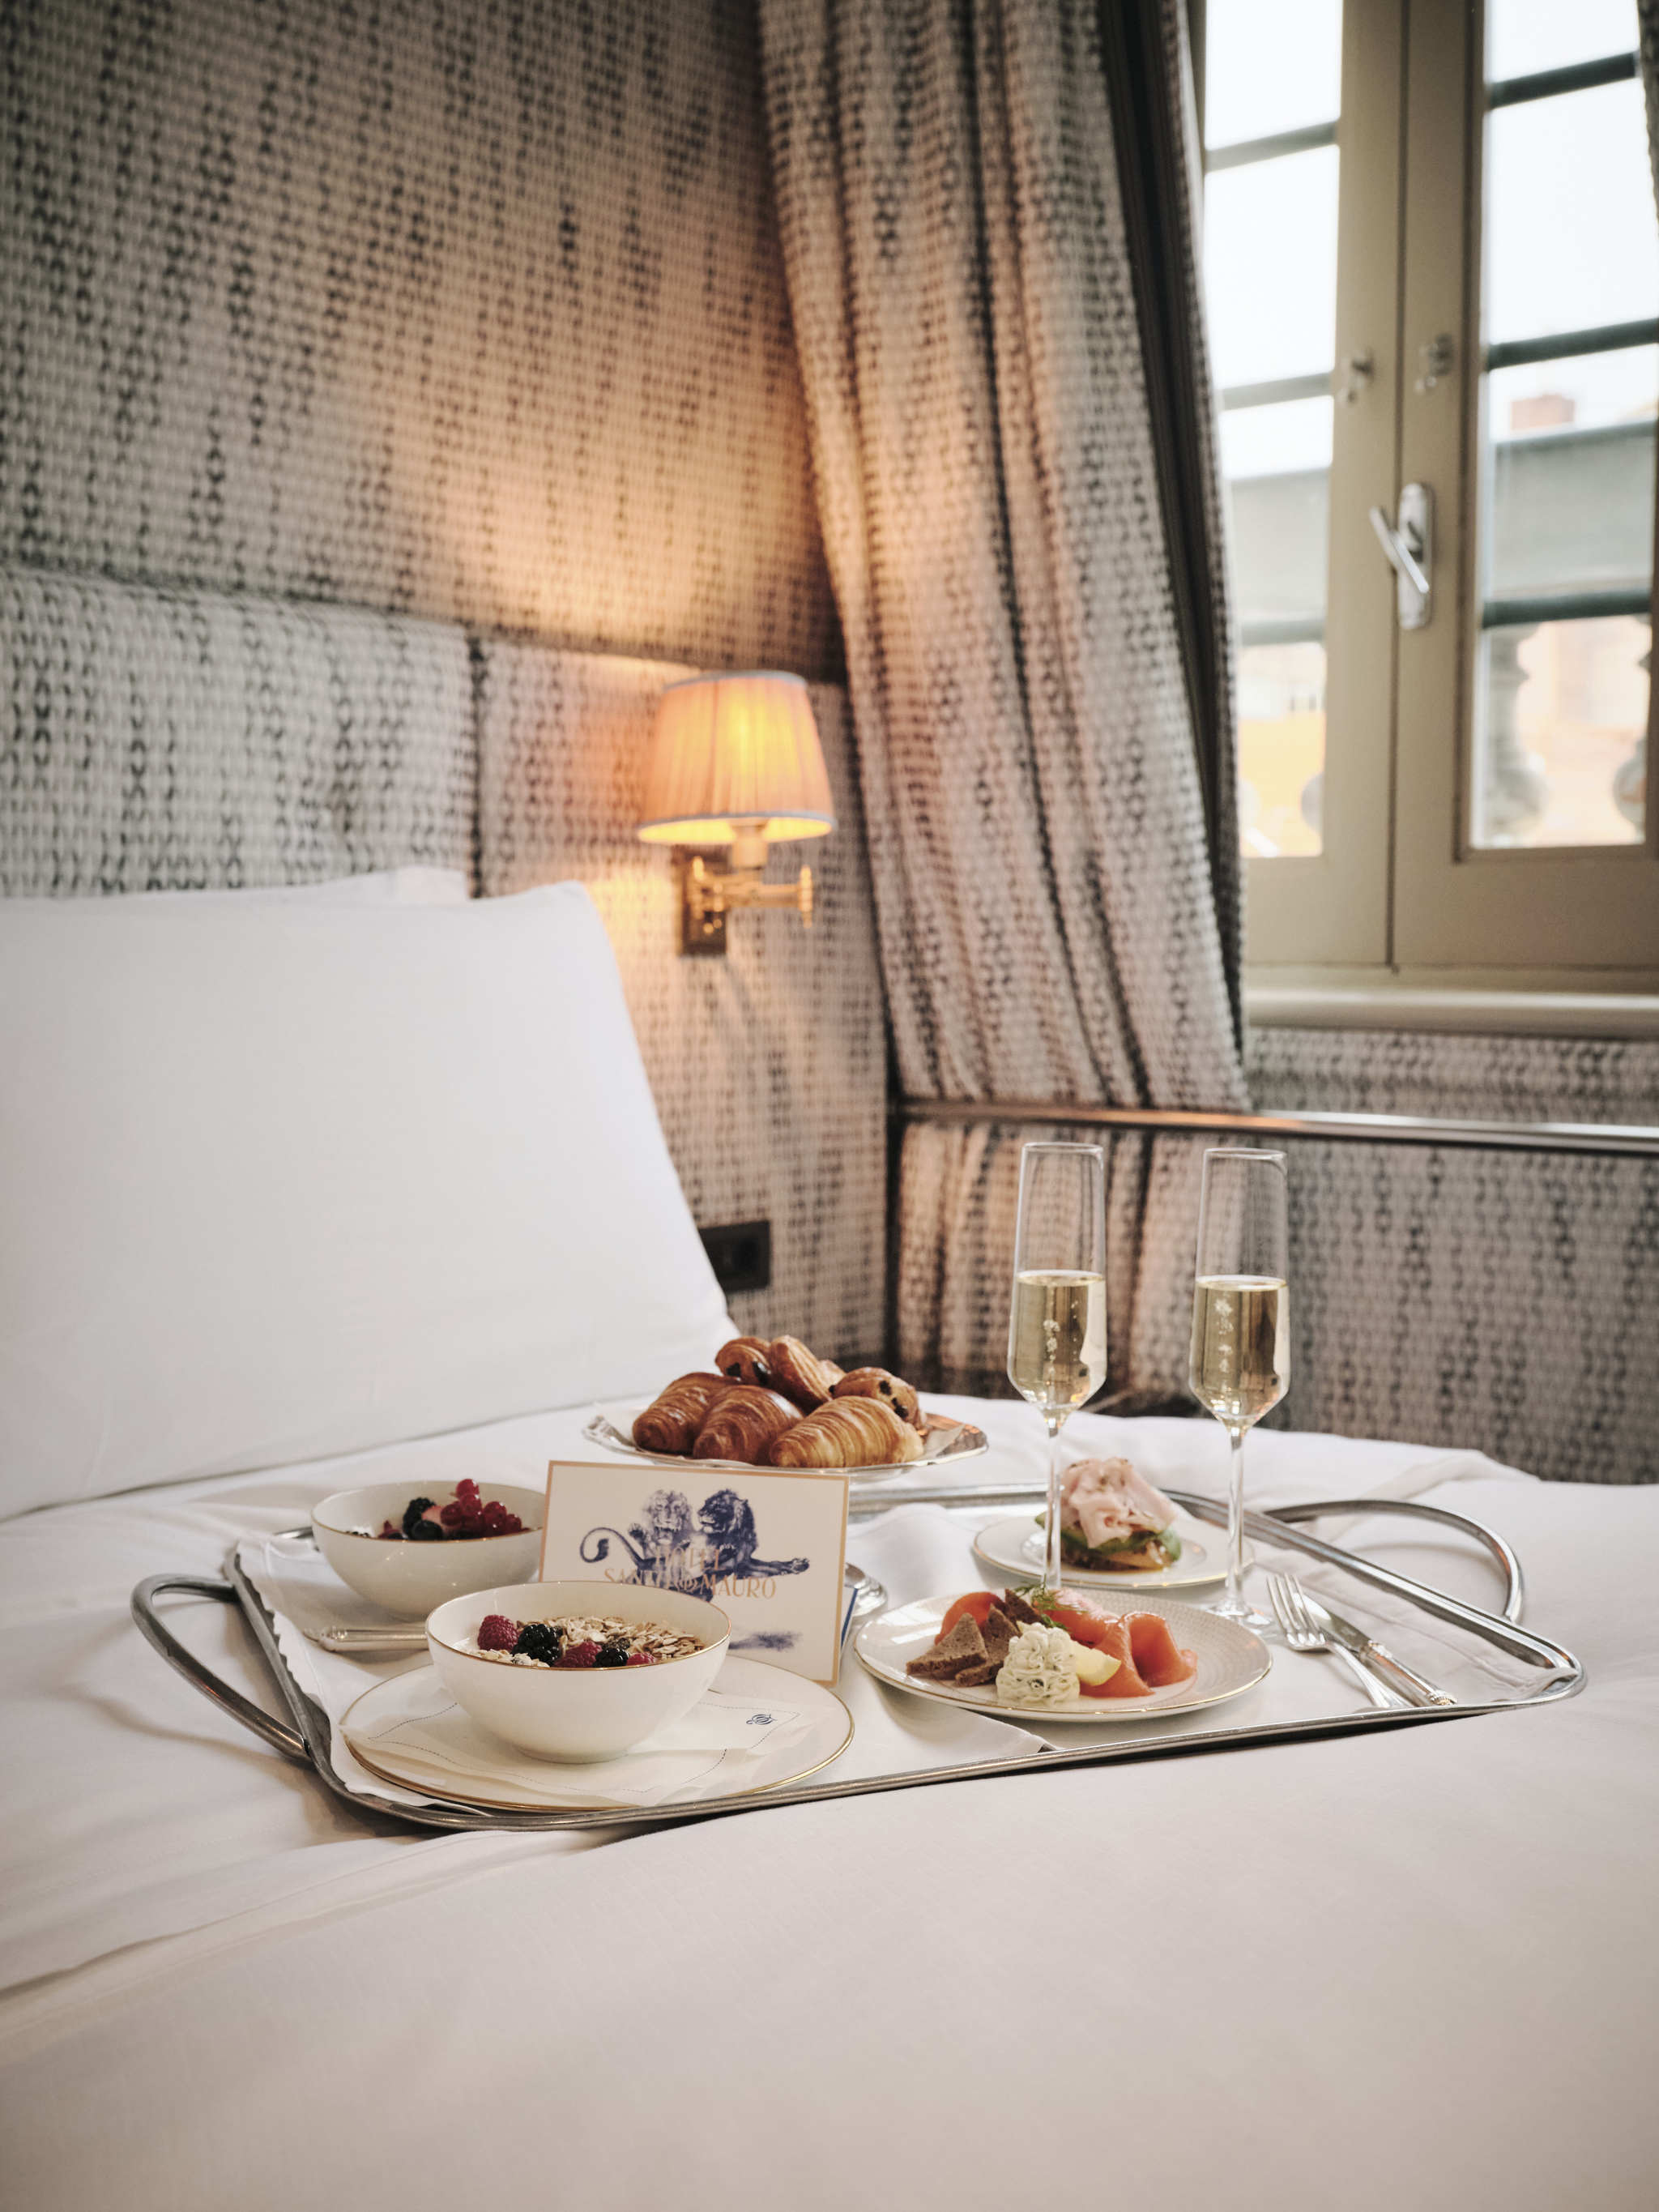 Desayuno en la cama en el hotel Santo Mauro de Madrid.